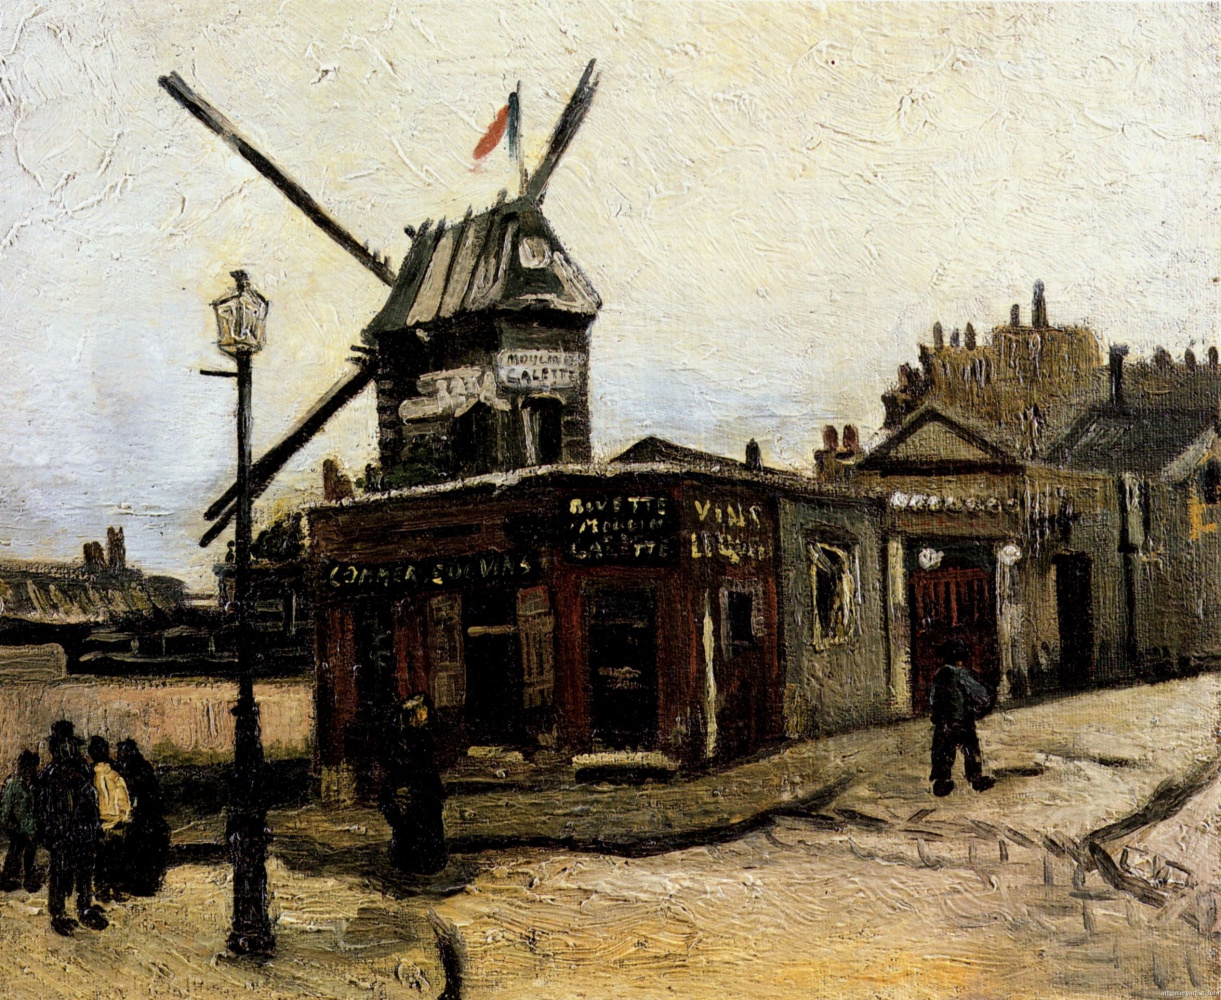 Vincent van Gogh. "Moulin de La Galette" (option)